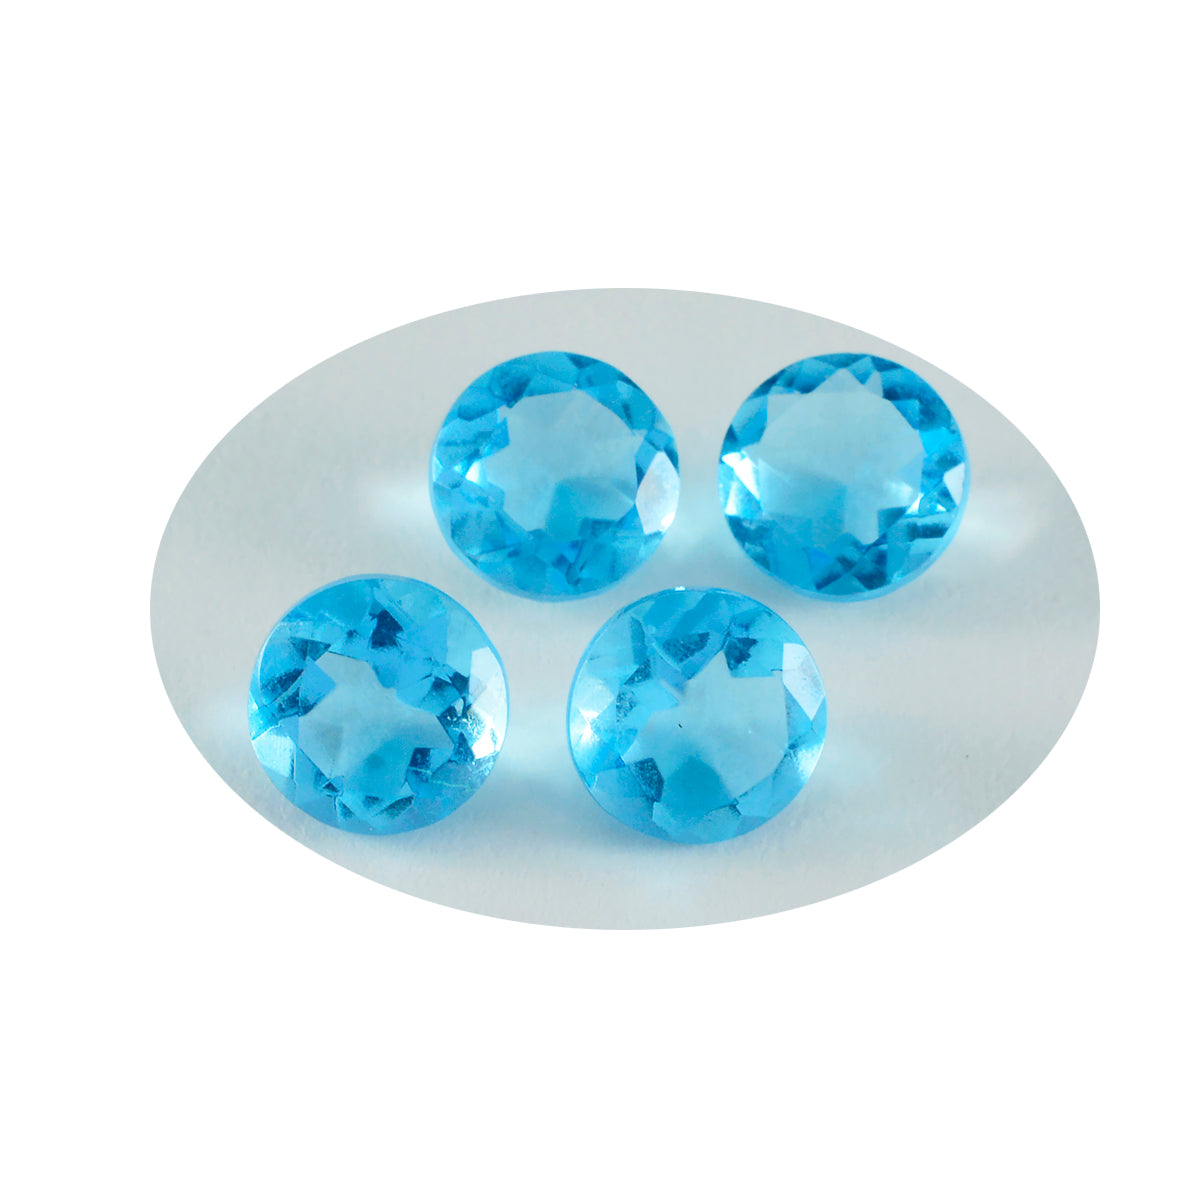 Riyogems 1 Stück blauer Topas, CZ, facettiert, 14 x 14 mm, runde Form, A1-Qualität, lose Edelsteine